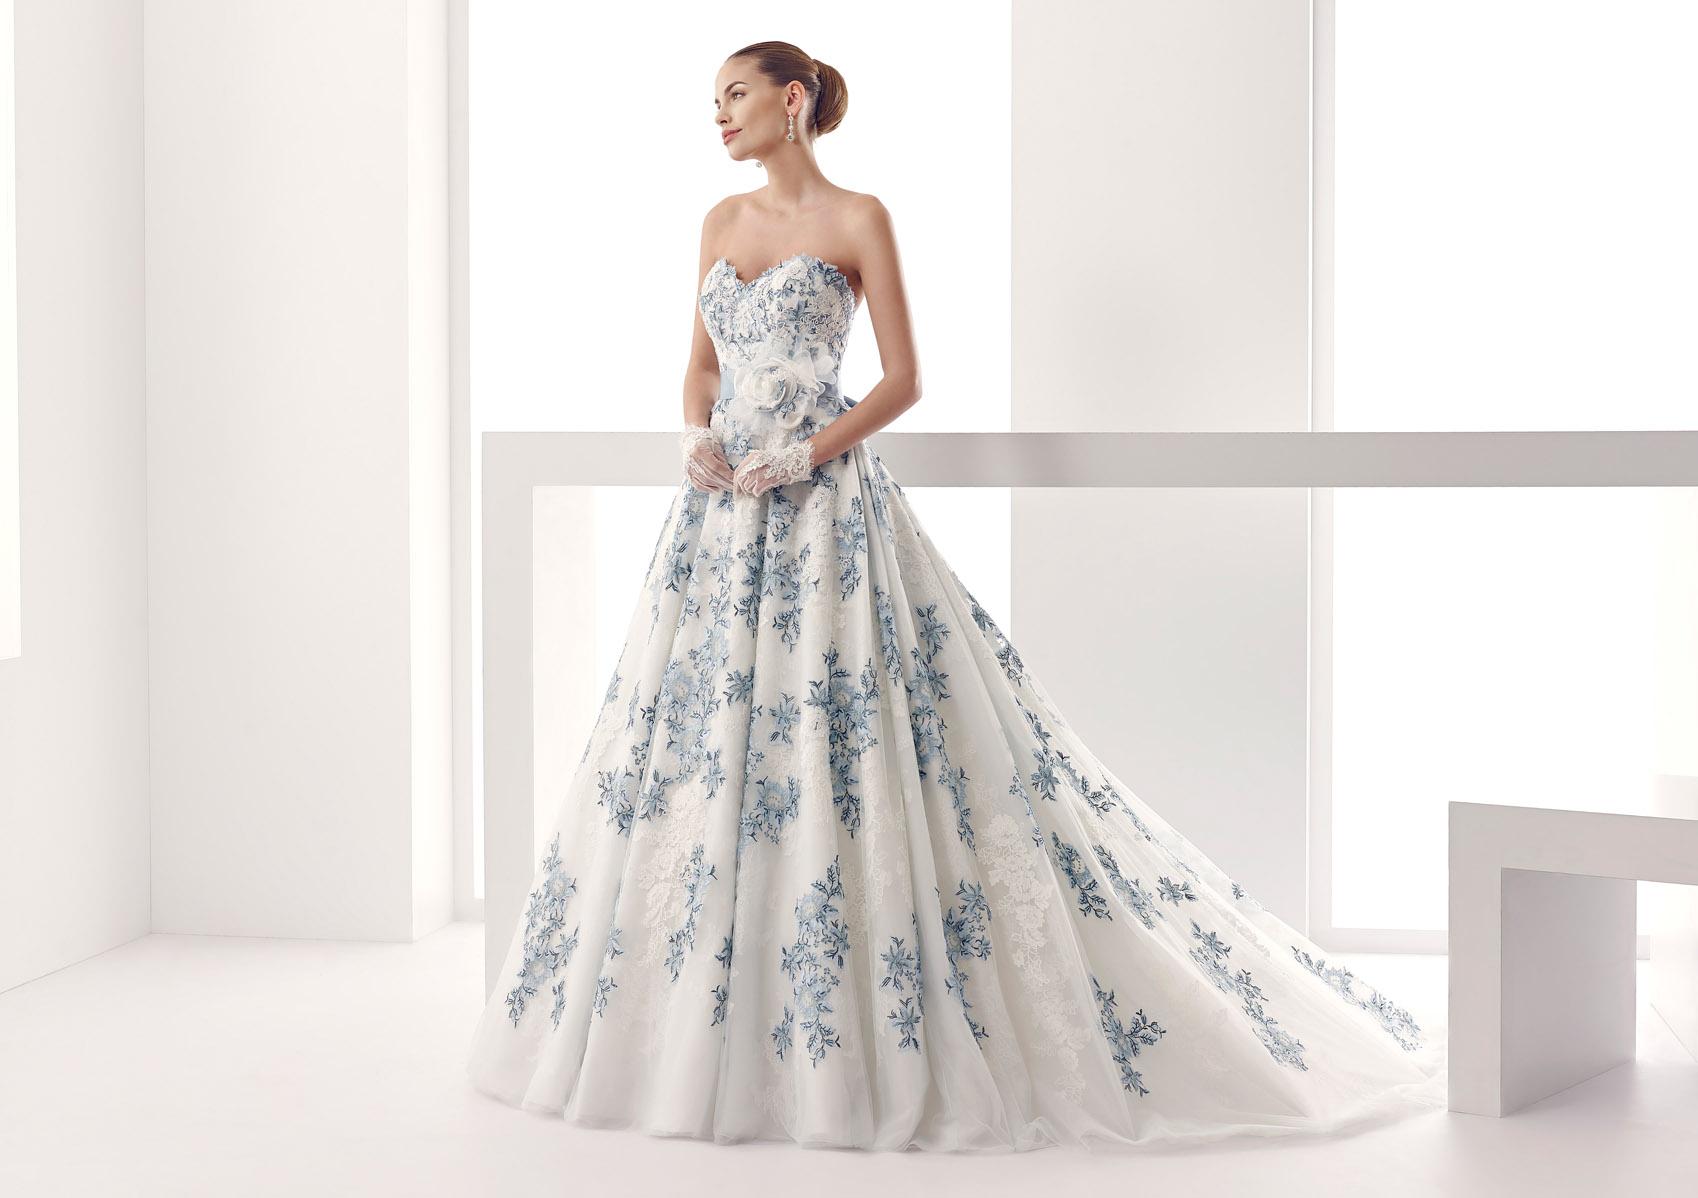 Abito celeste e bianco Jolies 2015 Vestito da sposa ampio con ricami colorati floreali